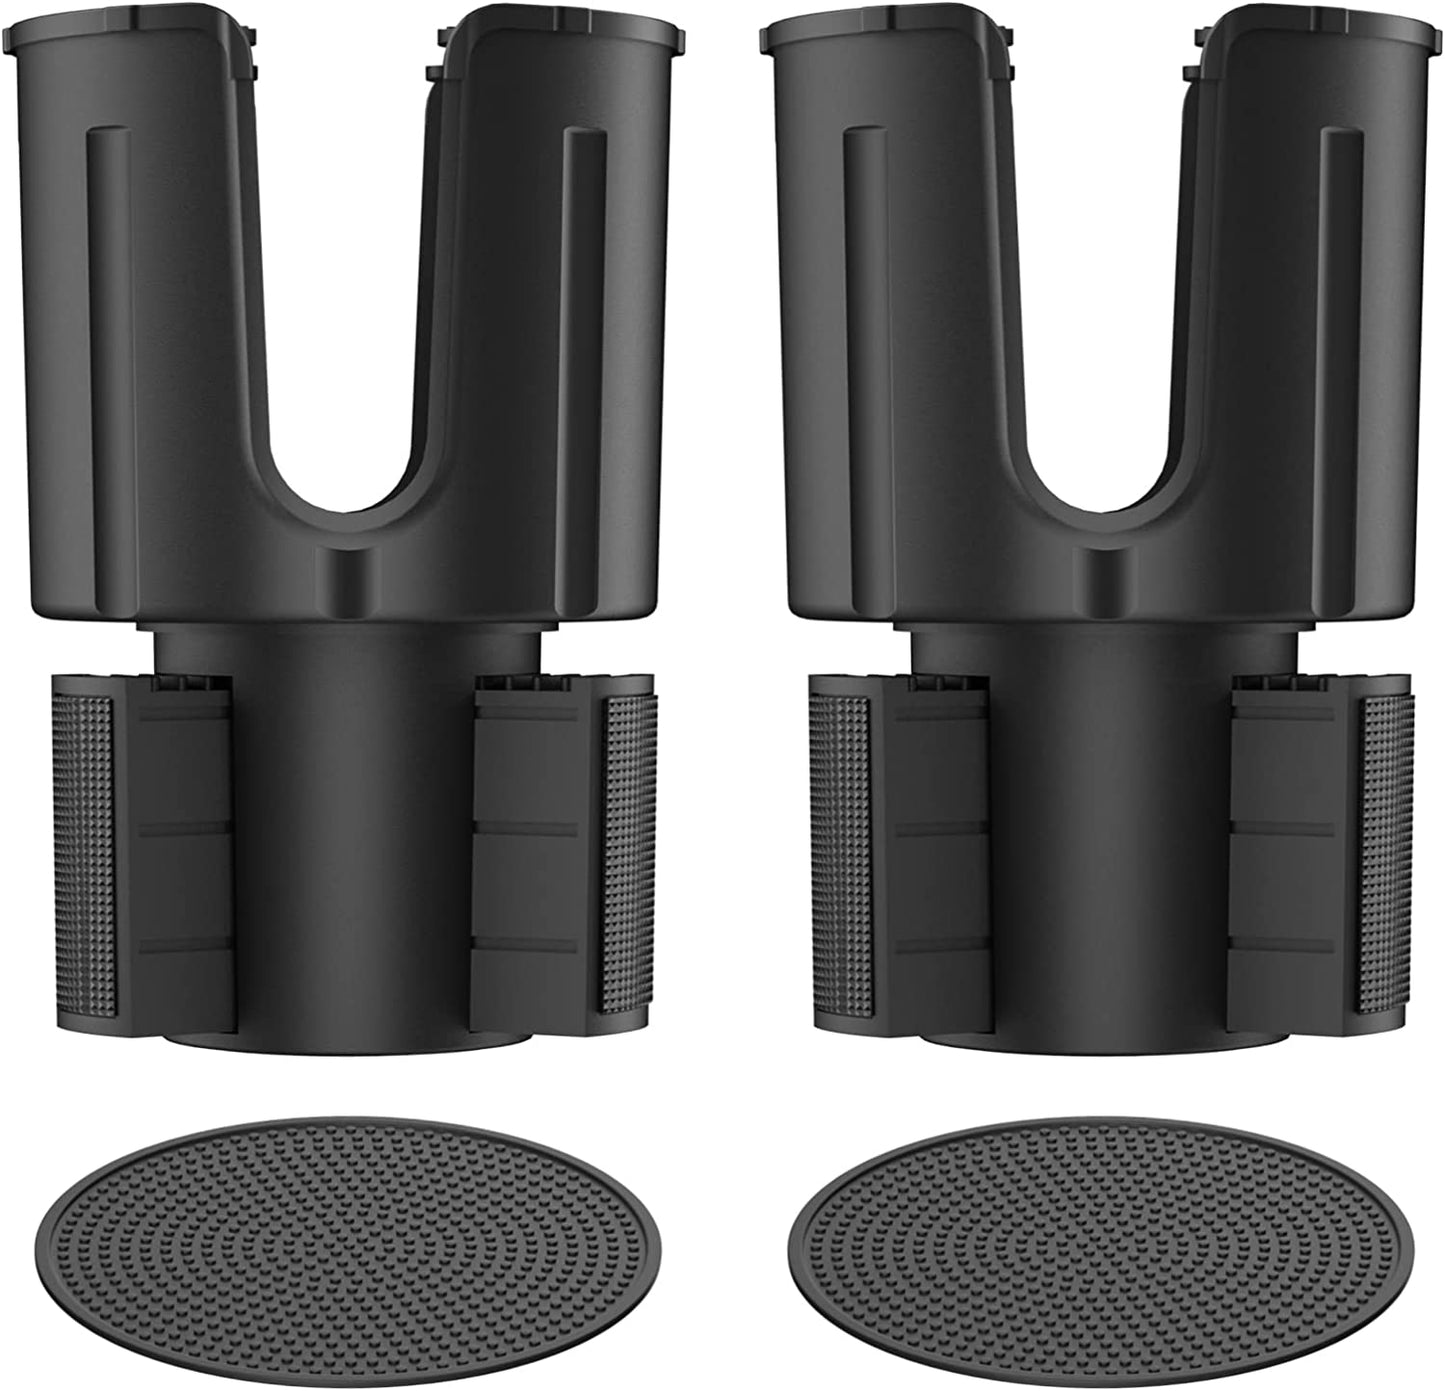 Car Cup Holder Expander with Offset Adjustable Base, Compatible for Bottles in 3.4"-4.4"